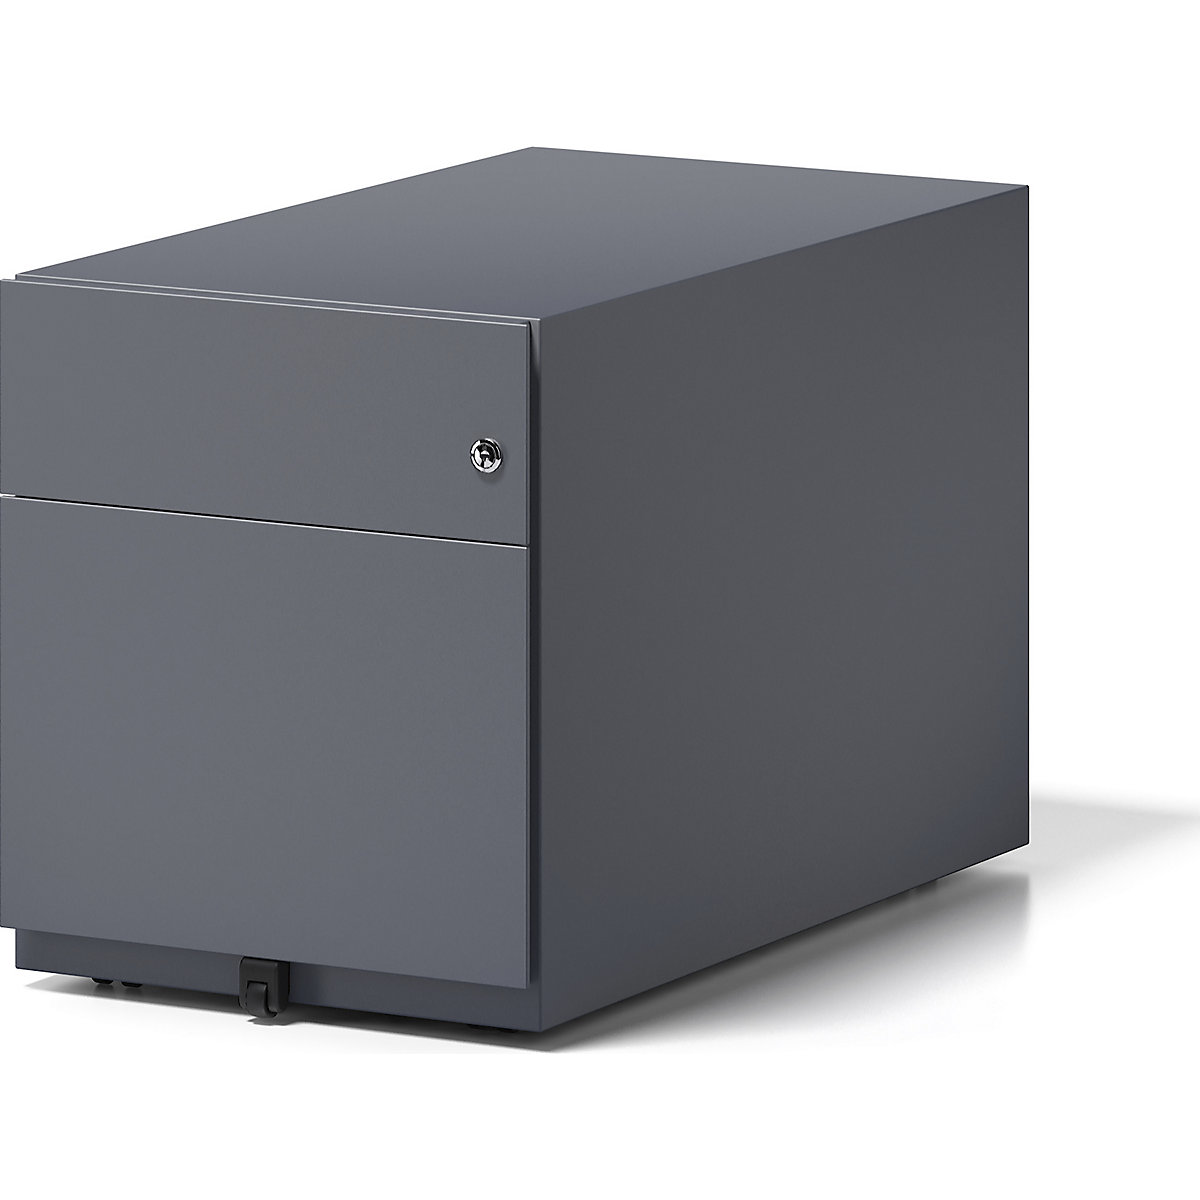 Pojazdný kontajner Note™, s 1 závesnou registratúrou, 1 univerzálnou zásuvkou – BISLEY, v x š x h 495 x 420 x 775 mm, s úchopnou lištou, antracitová šedá-5